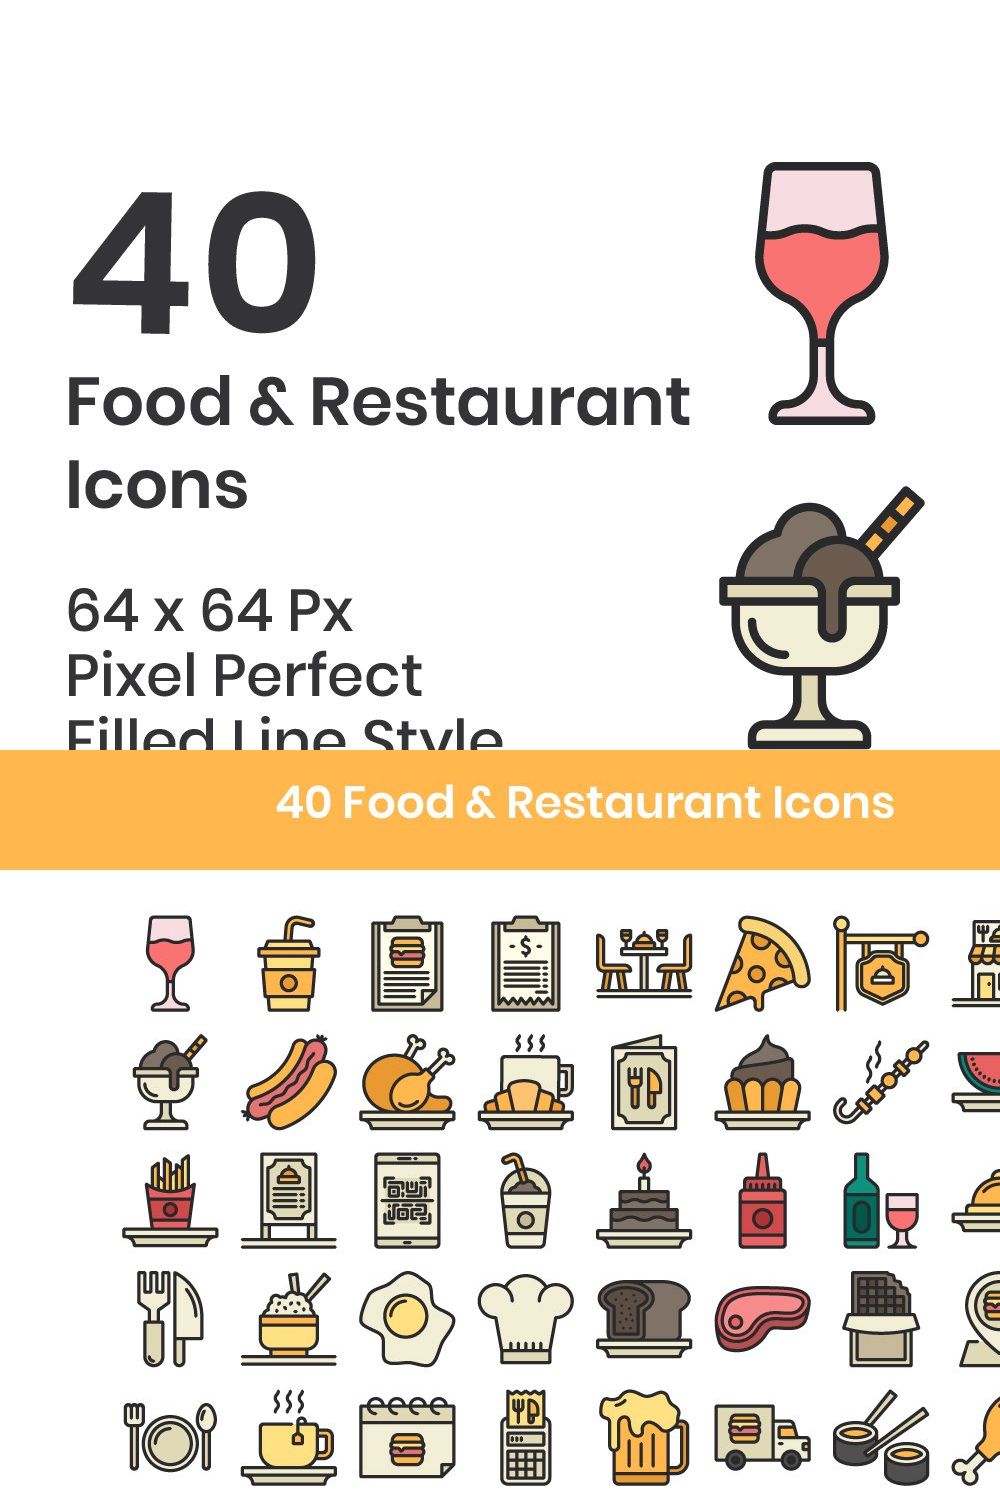 40 Food & Restaurant - Filled Line pinterest preview image.